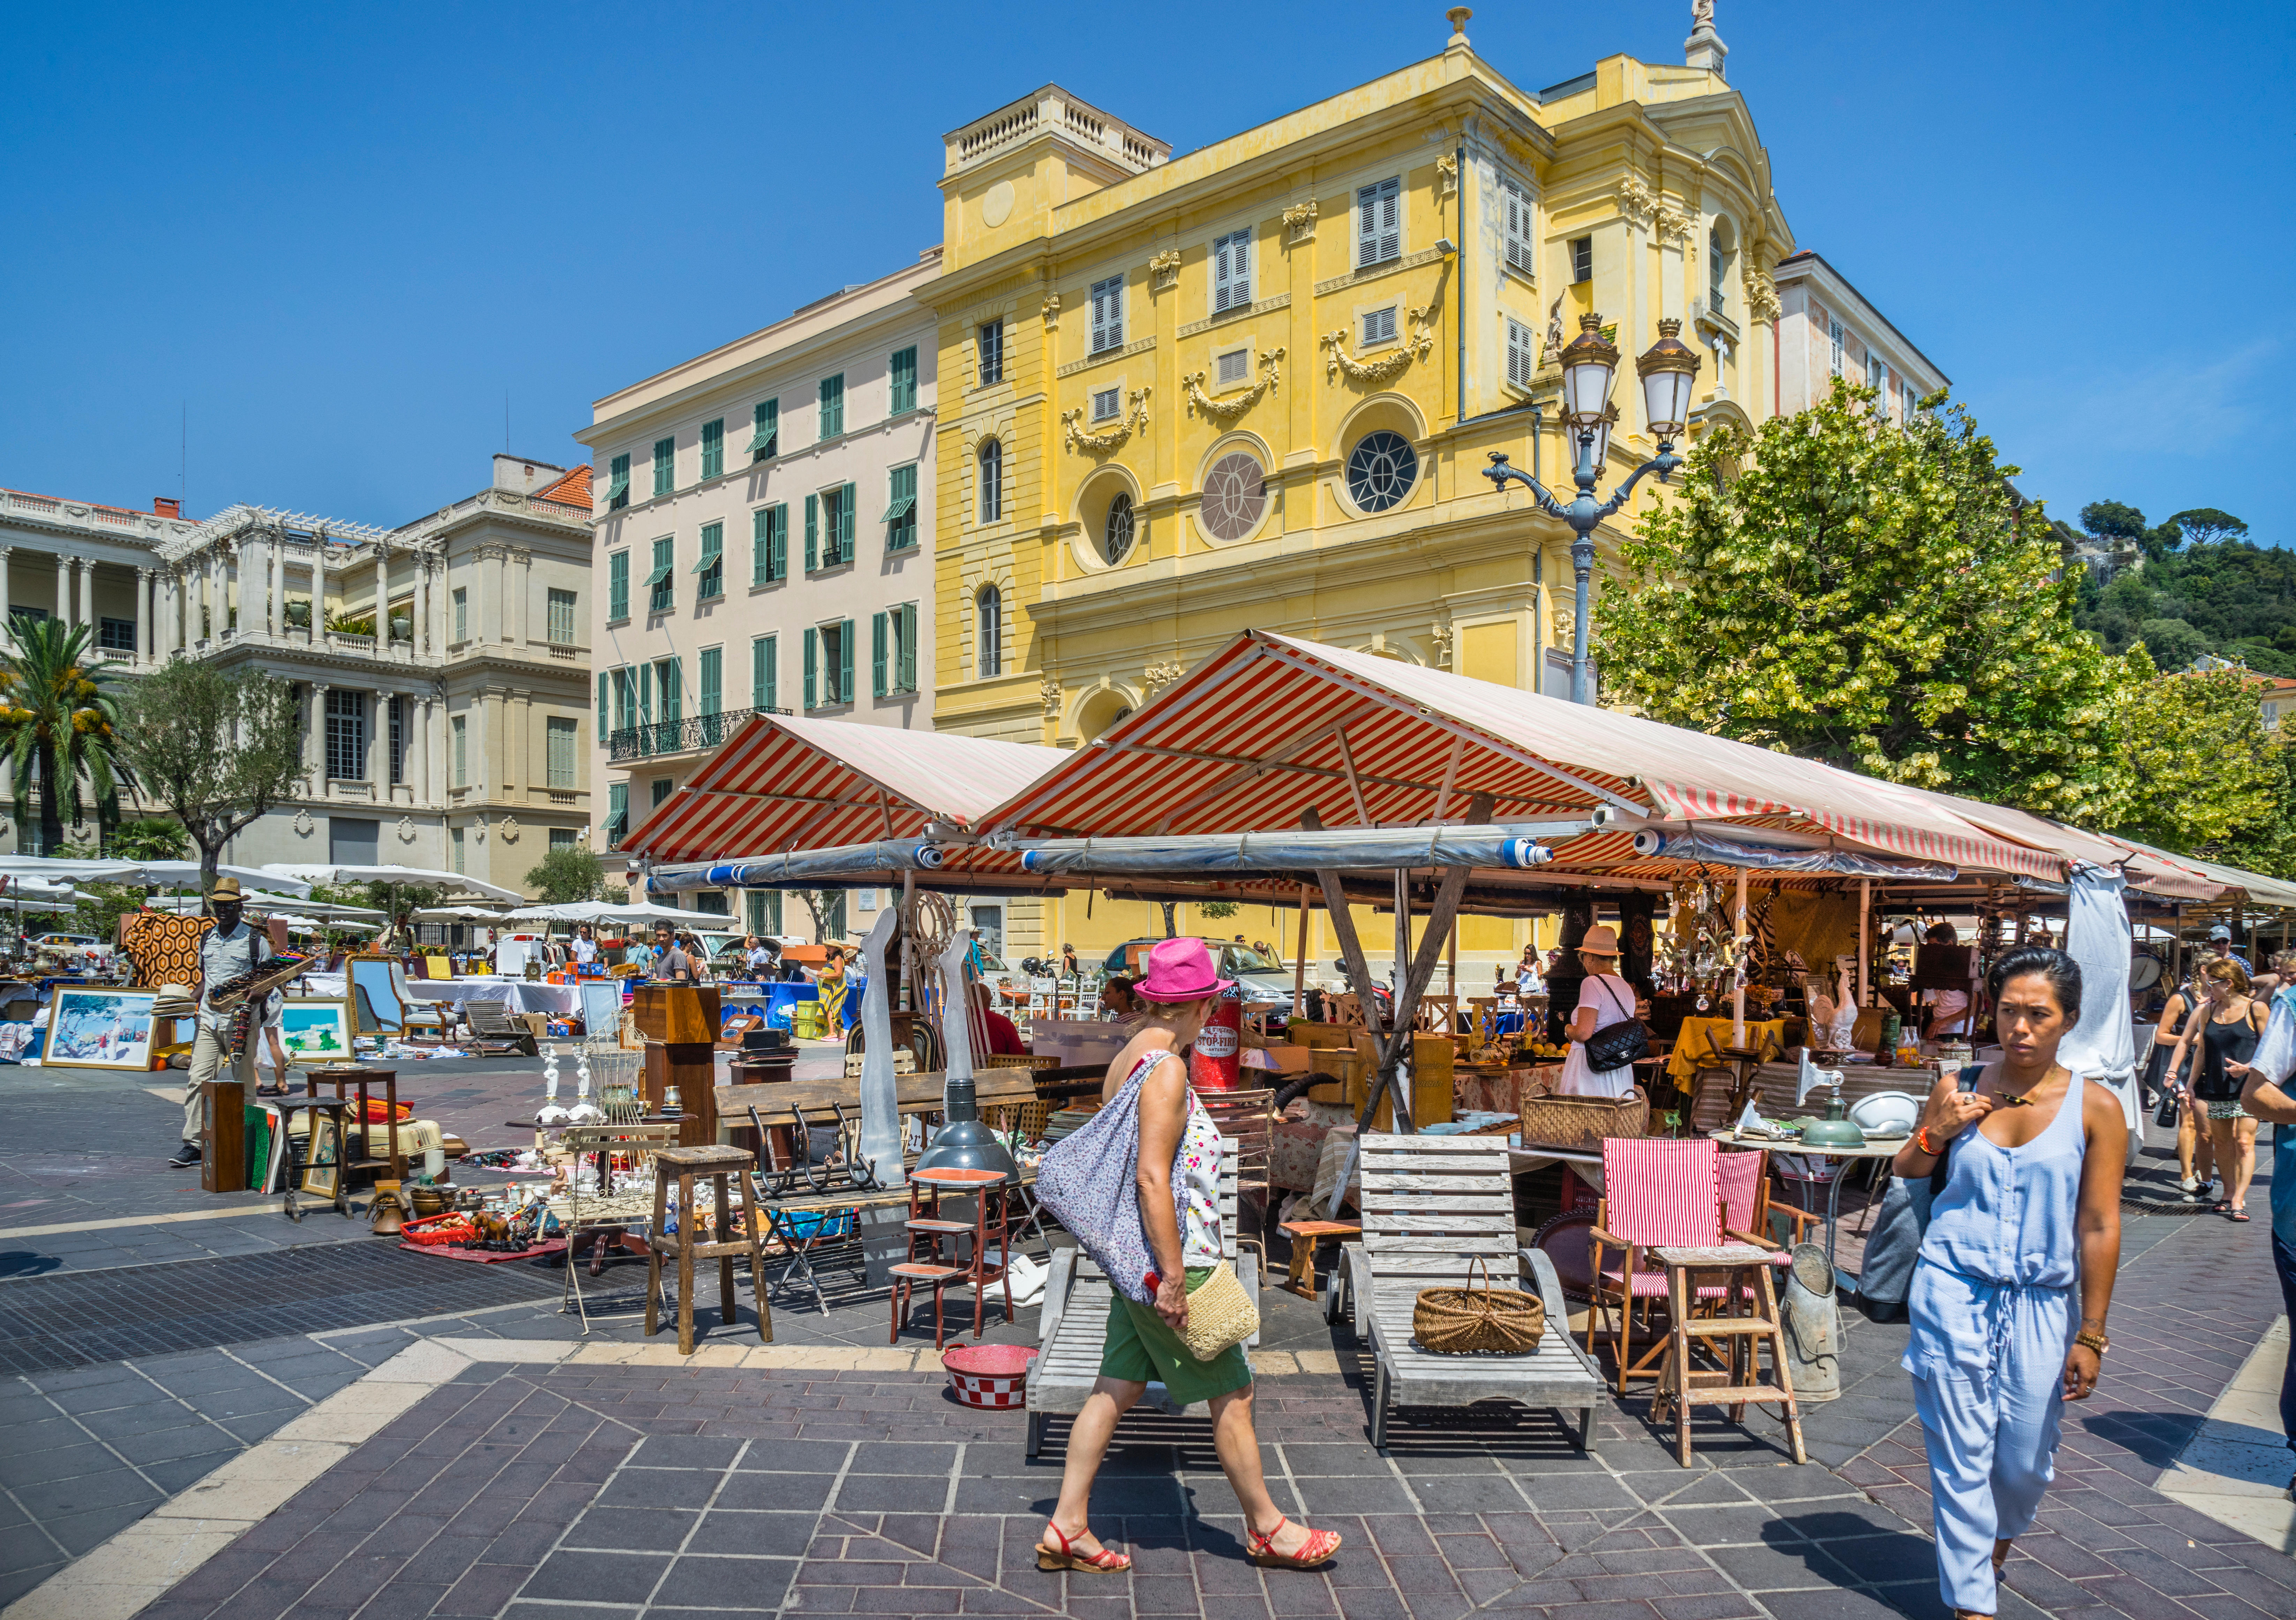 Mercado de flores y antigüedades de los lunes en Niza.